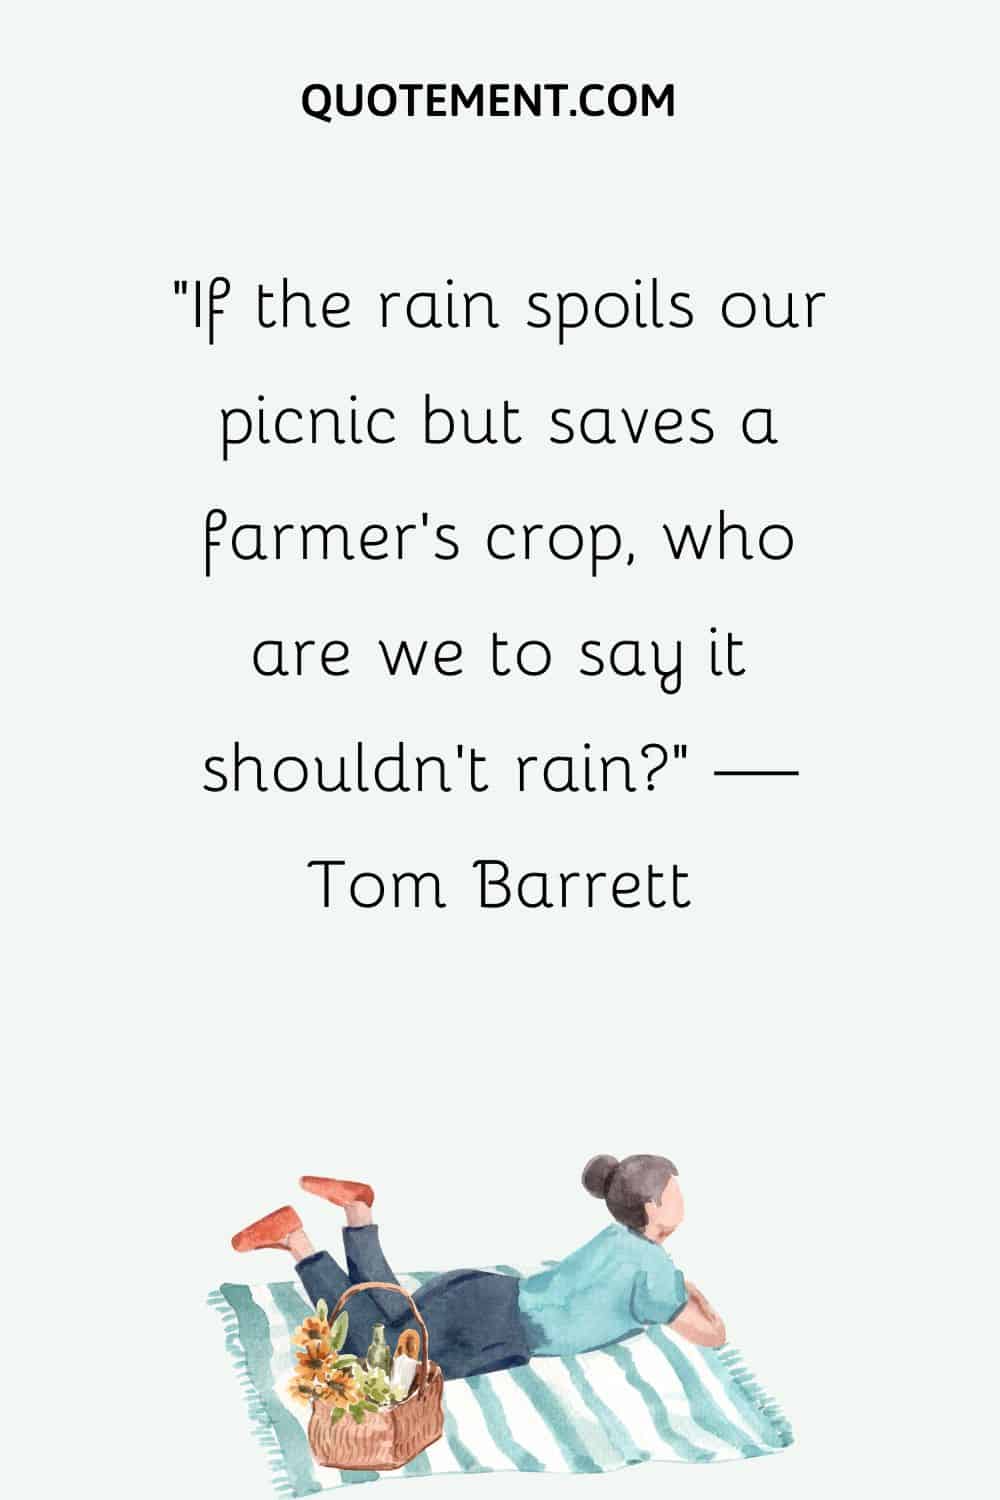 Si la lluvia estropea nuestro picnic pero salva la cosecha de un agricultor